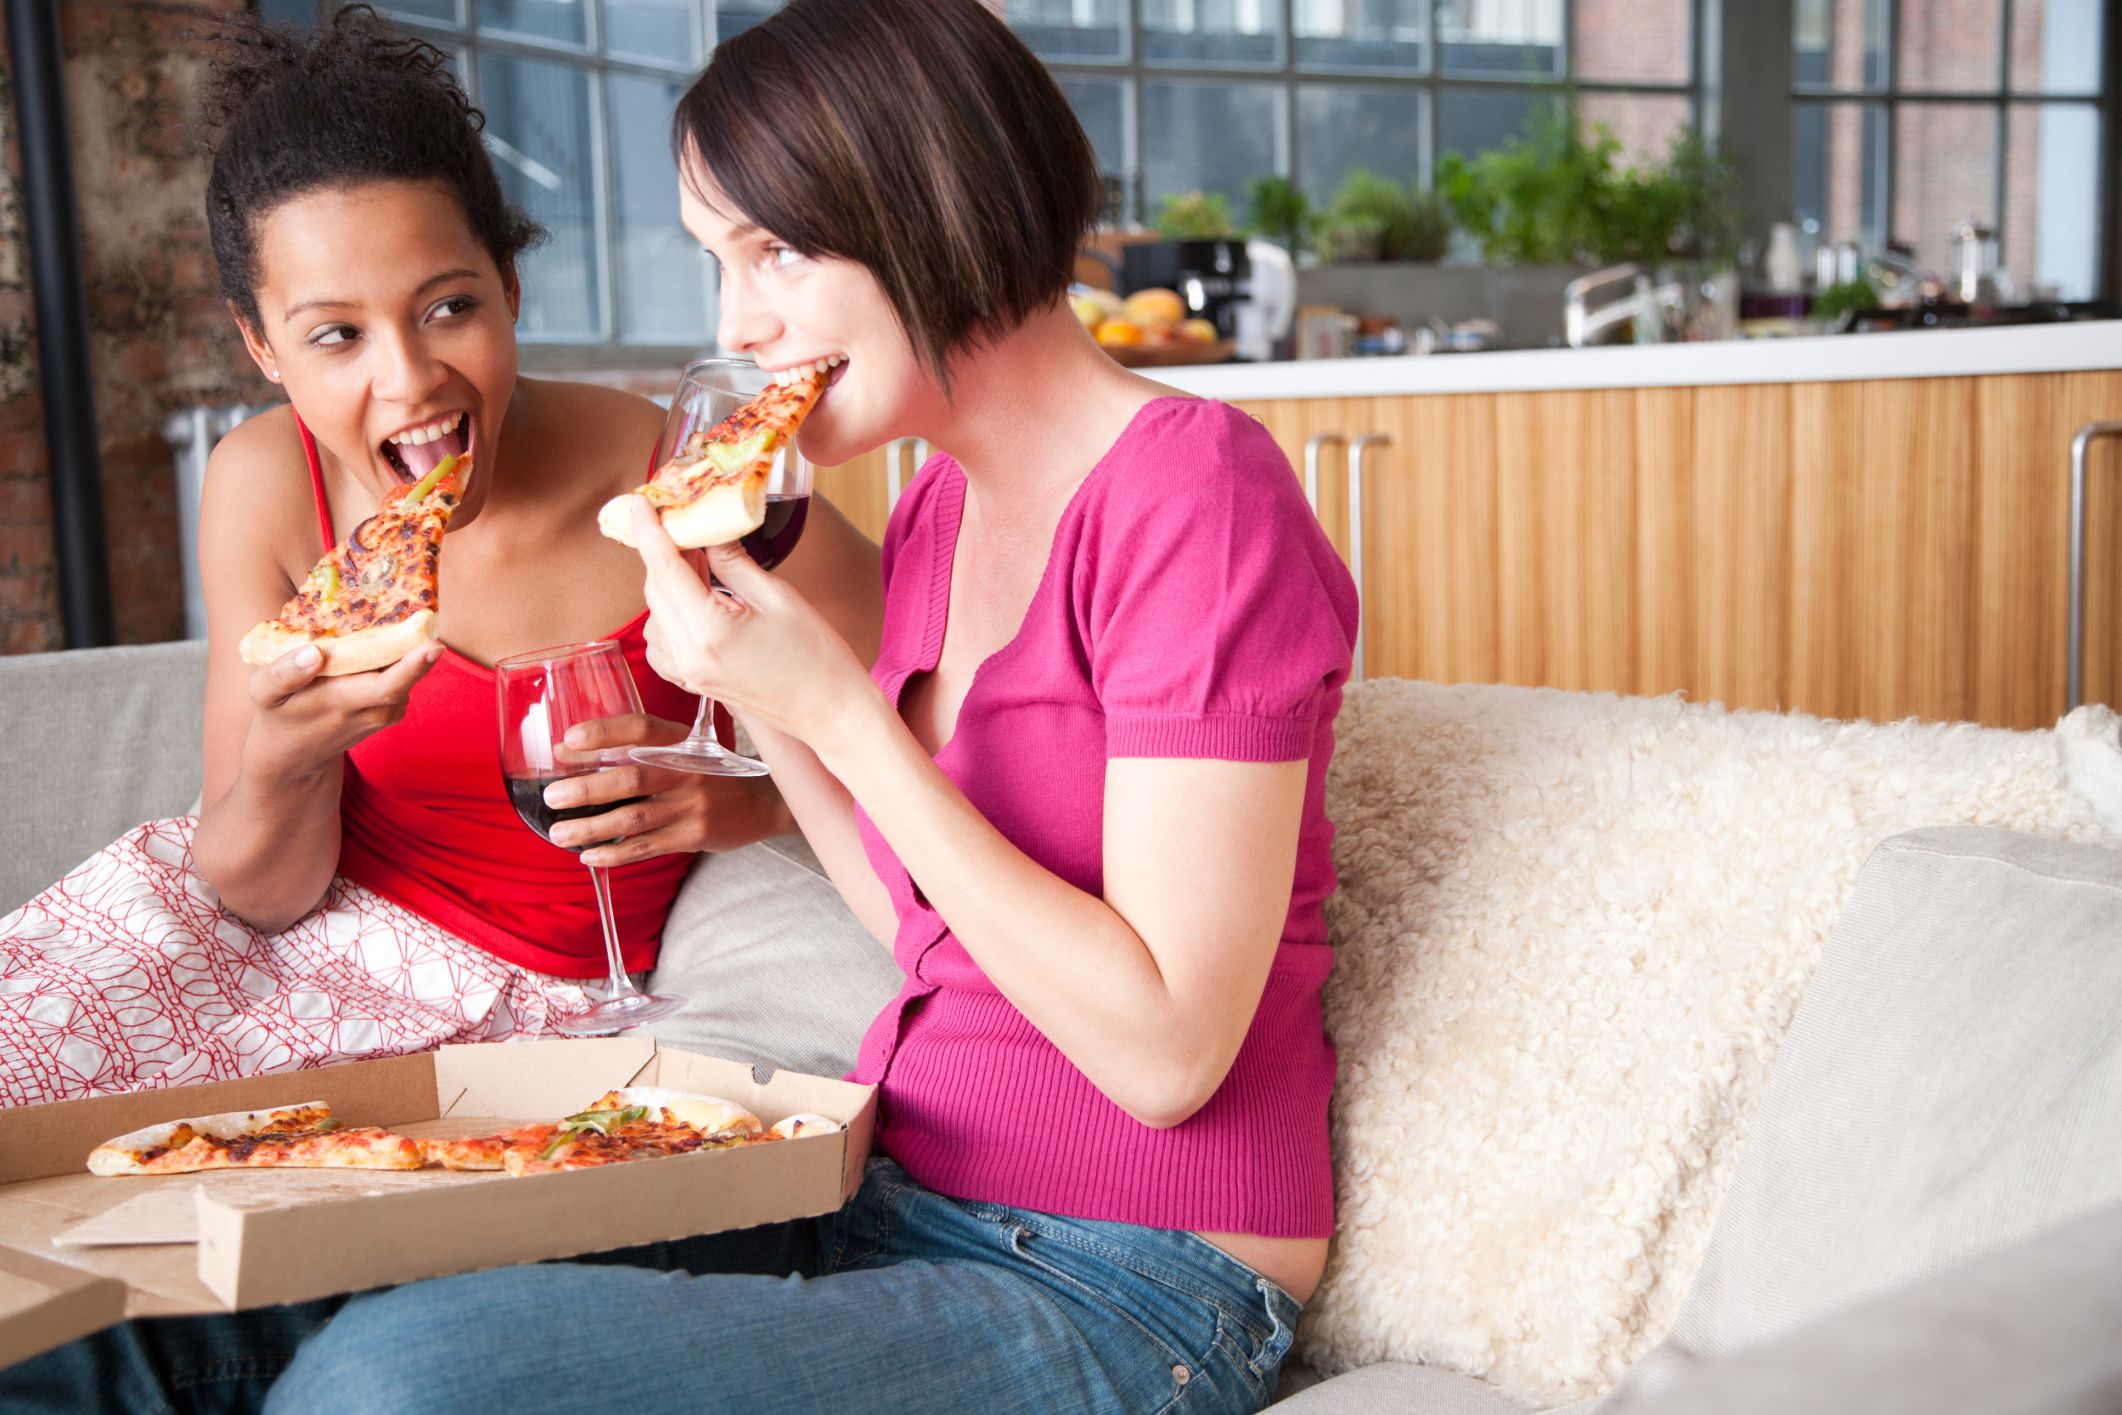 She eats meat. Пицца женщина. Девушка наслаждение пиццей. Аппетитная пища и люди. Люди едят пиццу.